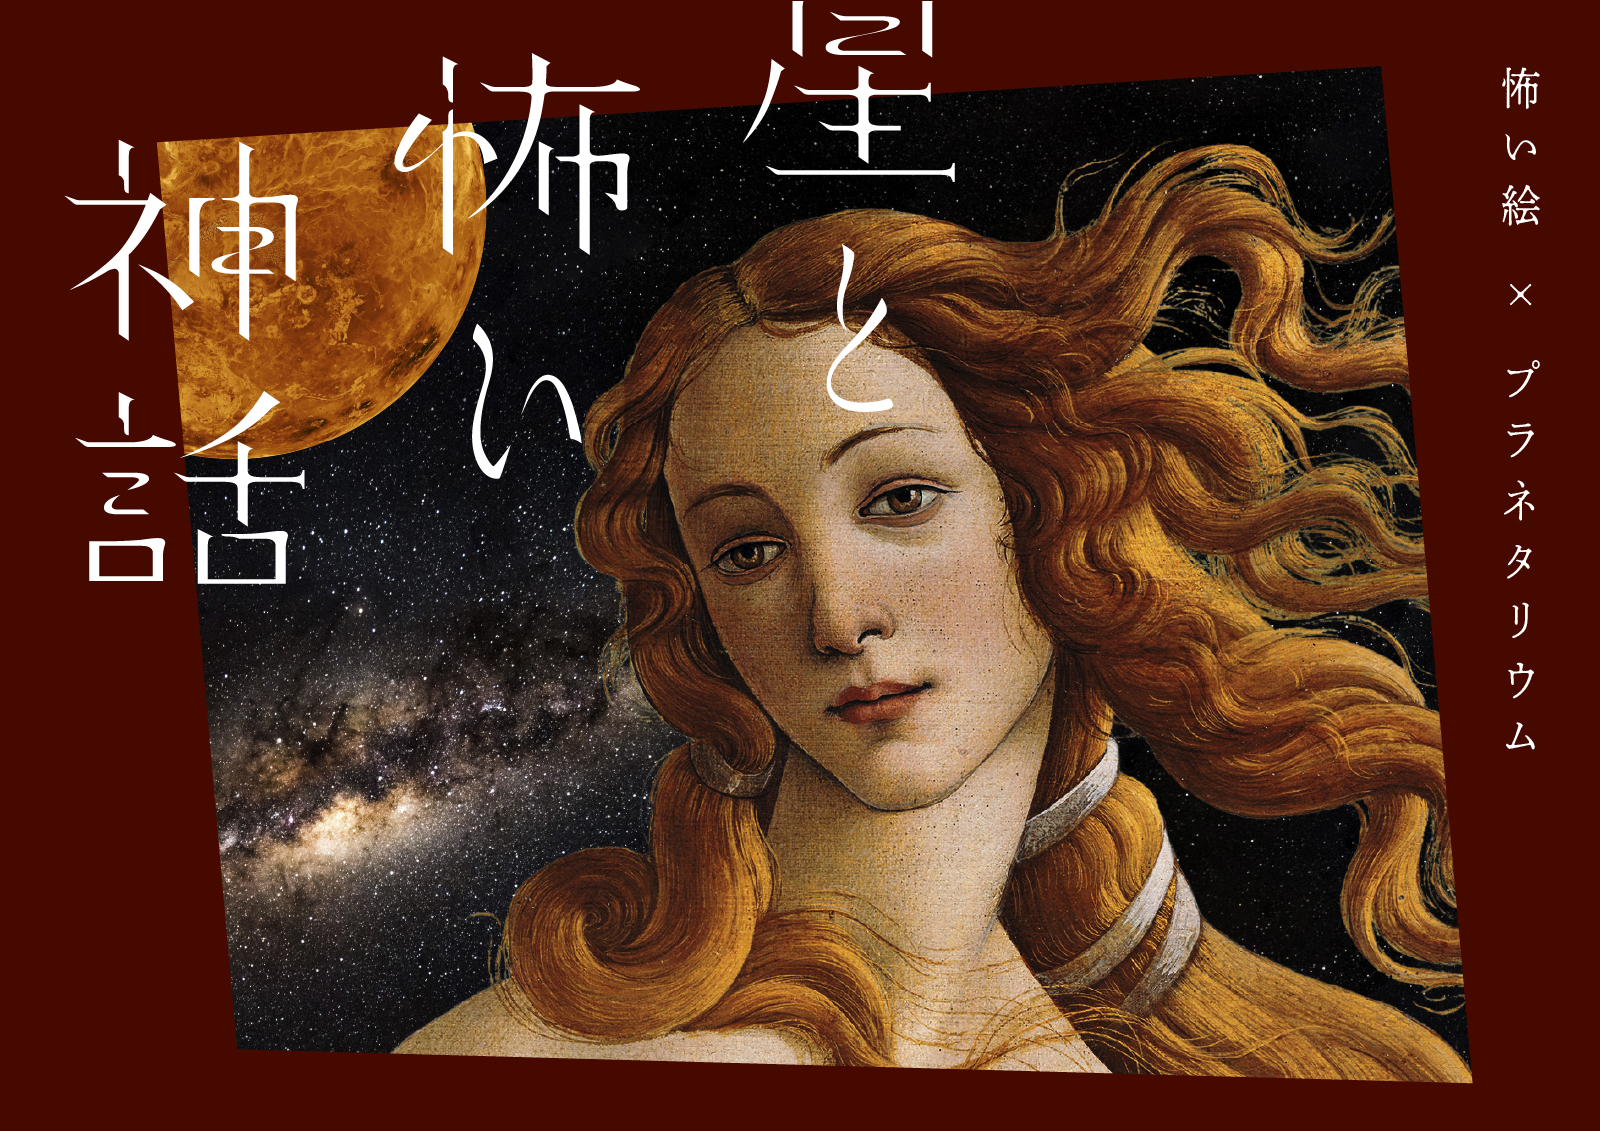 「星と怖い神話 怖い絵×プラネタリウム」　麗しい名画に隠された恐怖の物語を上映